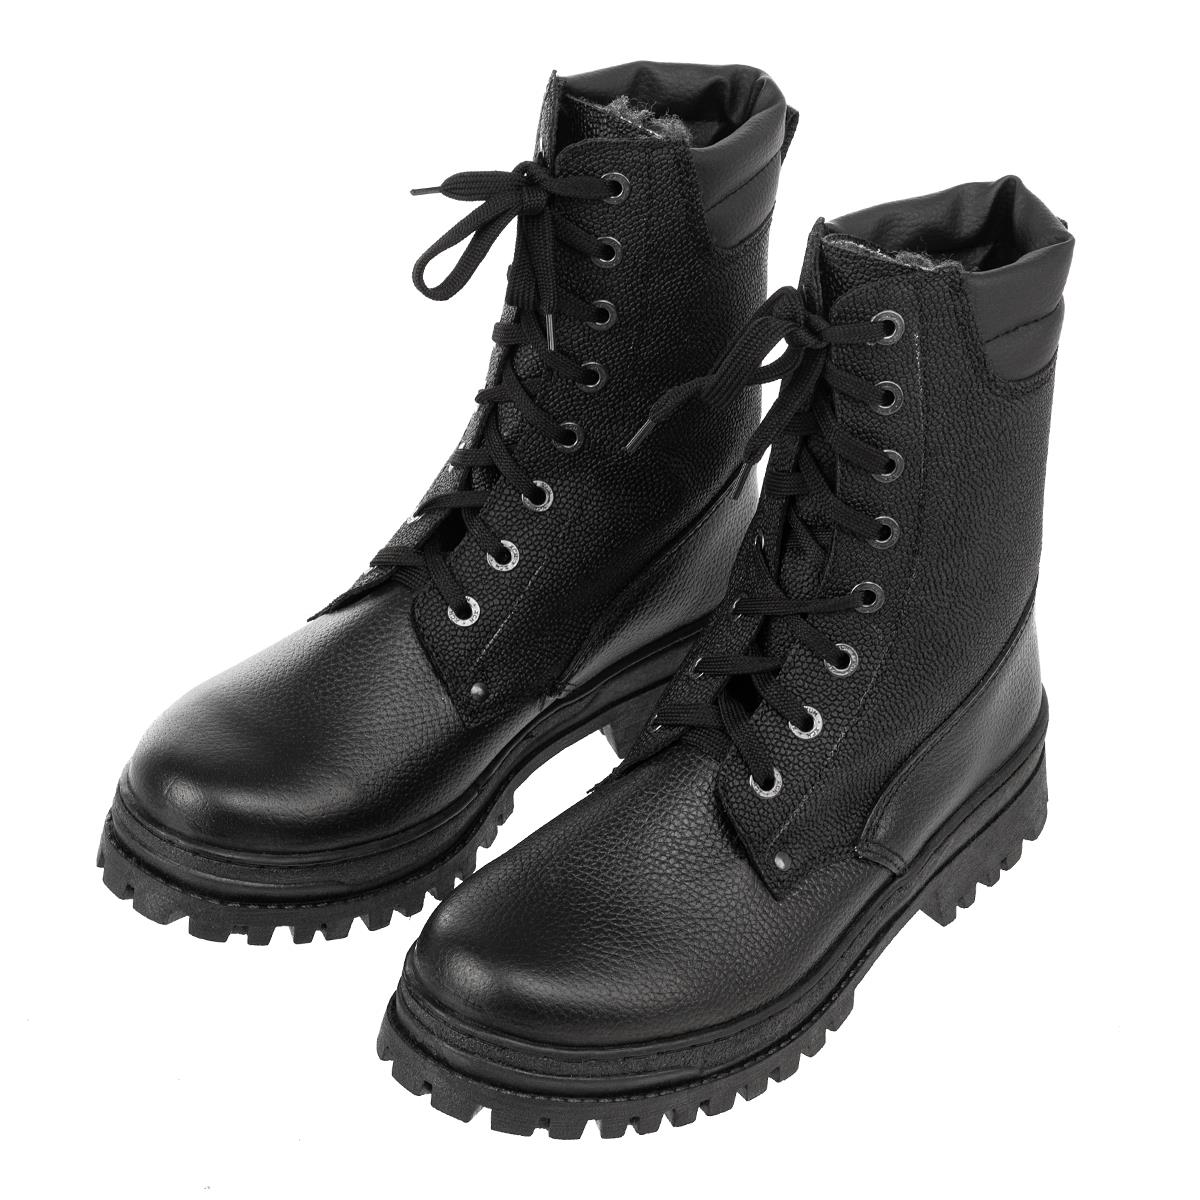 Ботинки рабочие мужские ХСН Охрана Зима (504) черные 41 RU